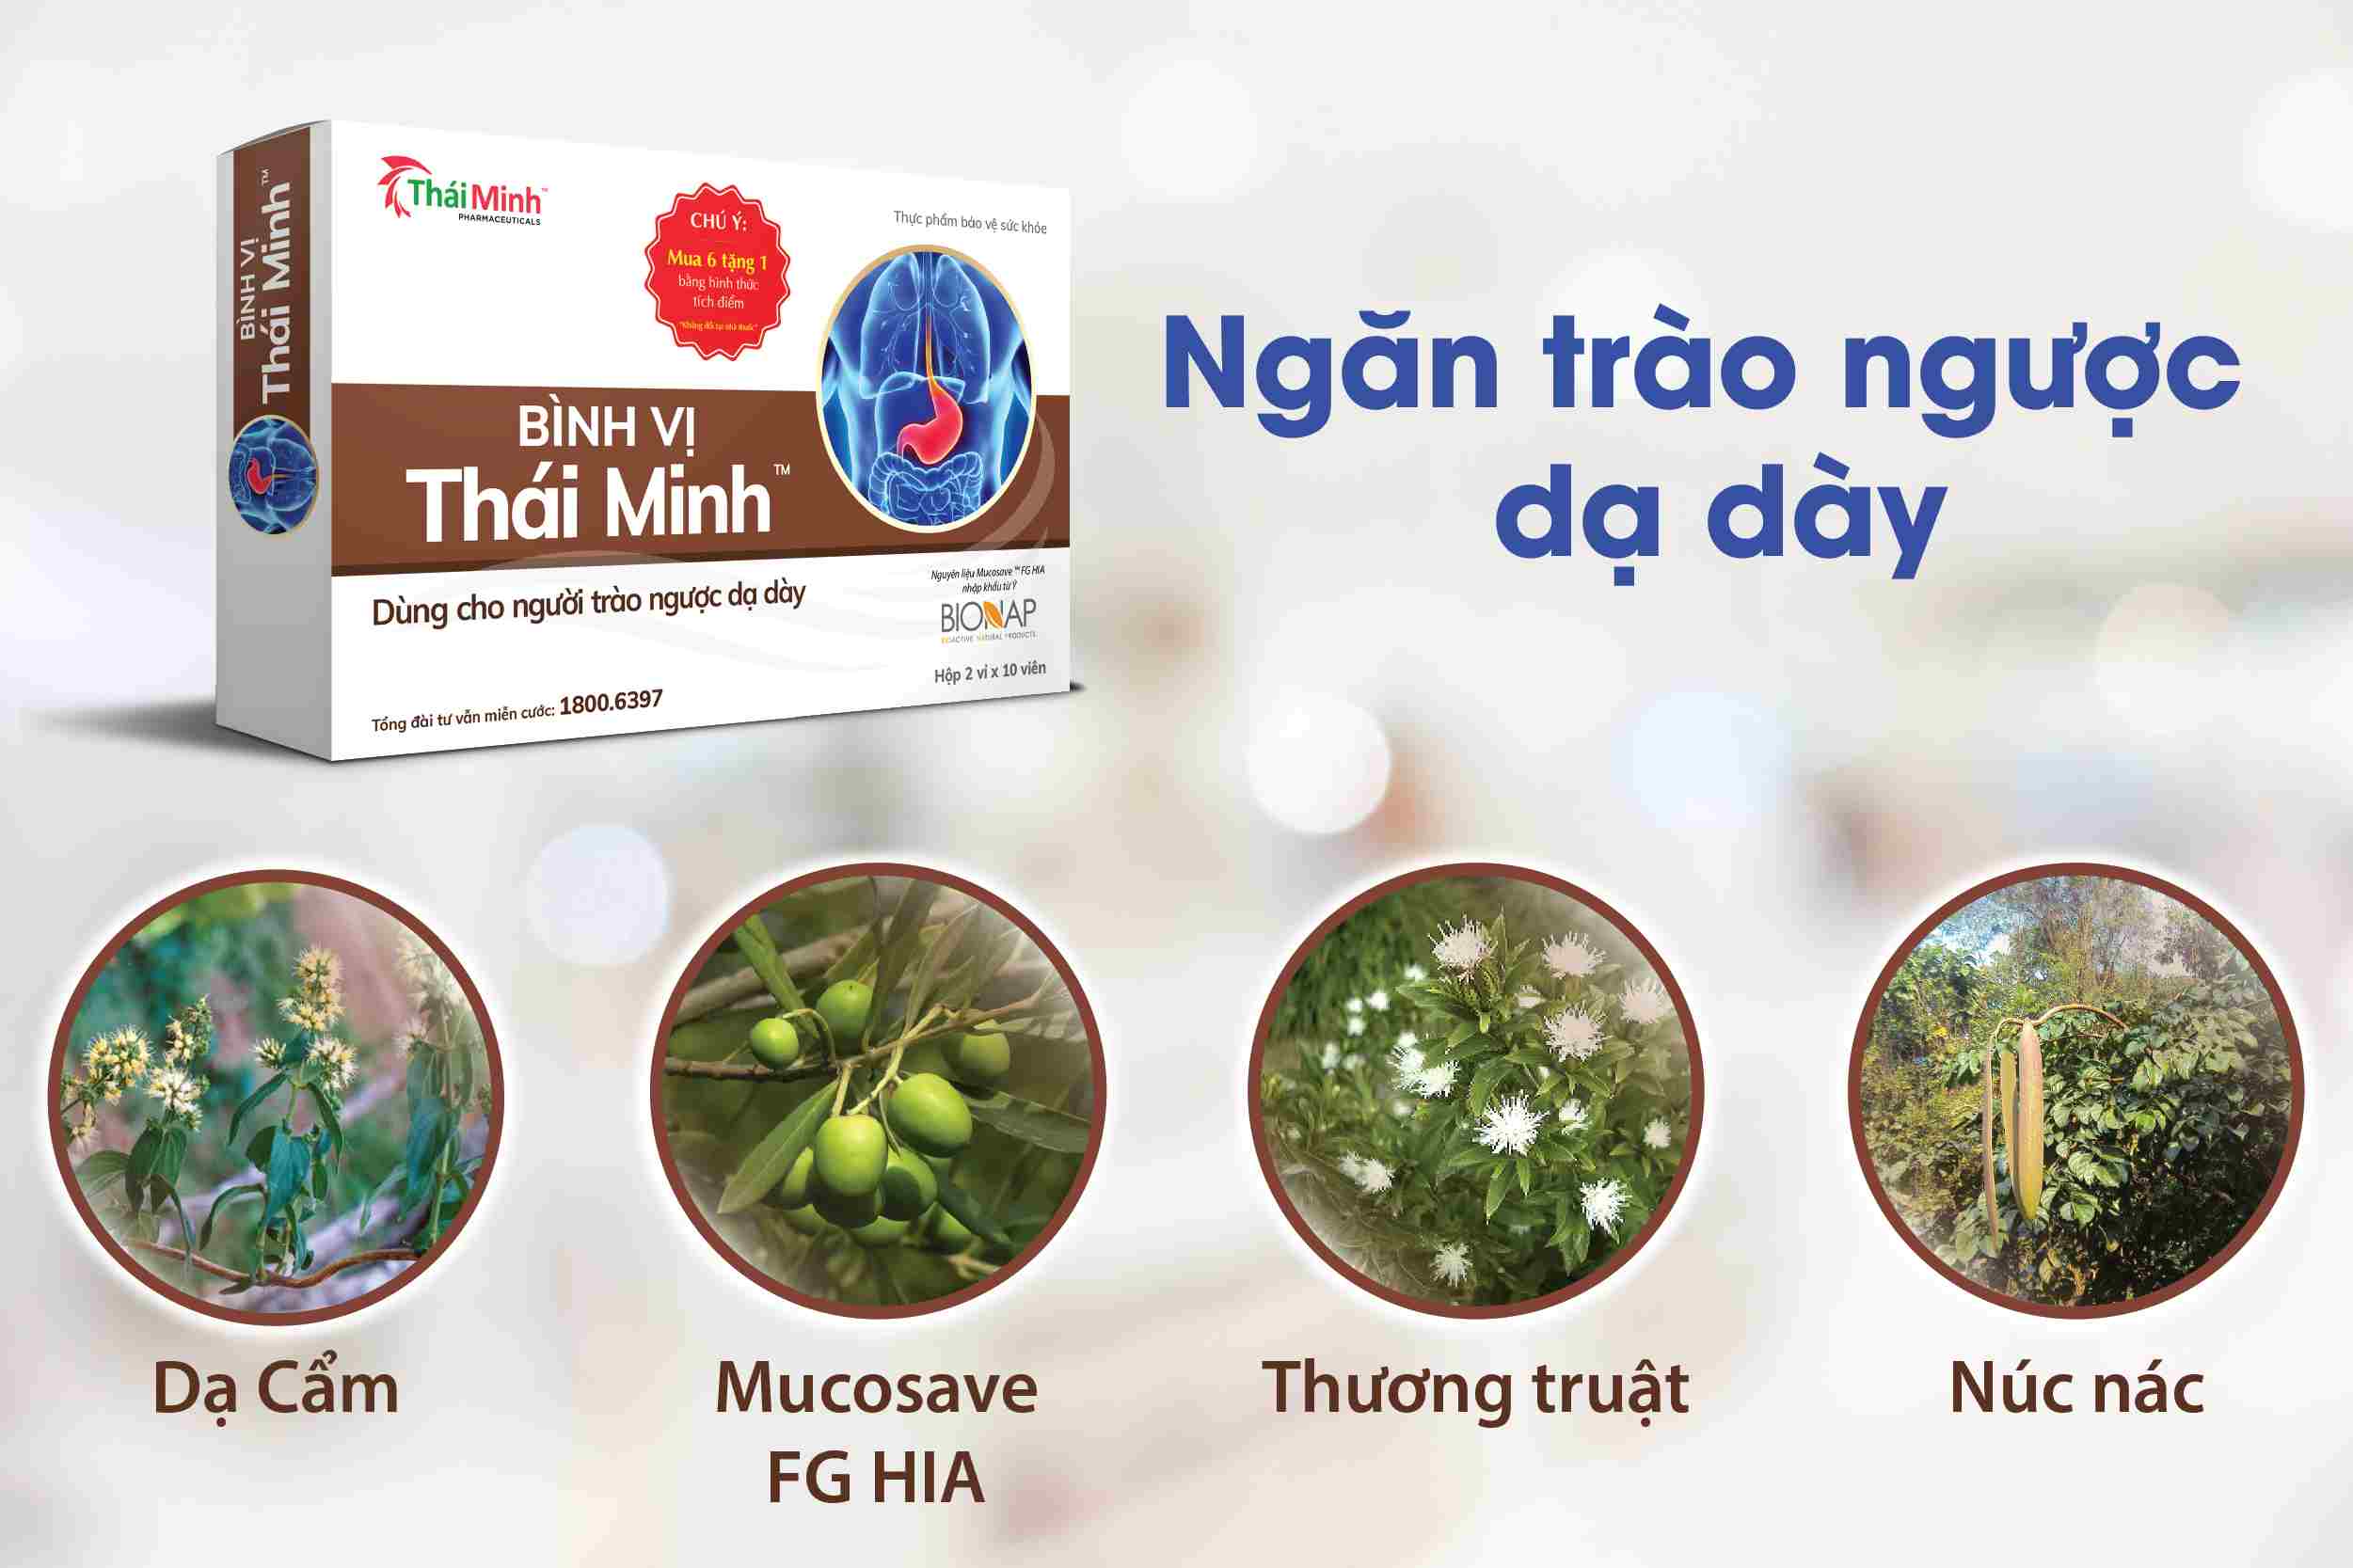 Bình Vị Thái Minh - Giải pháp hiệu quả cho người trào ngược dạ dày 1